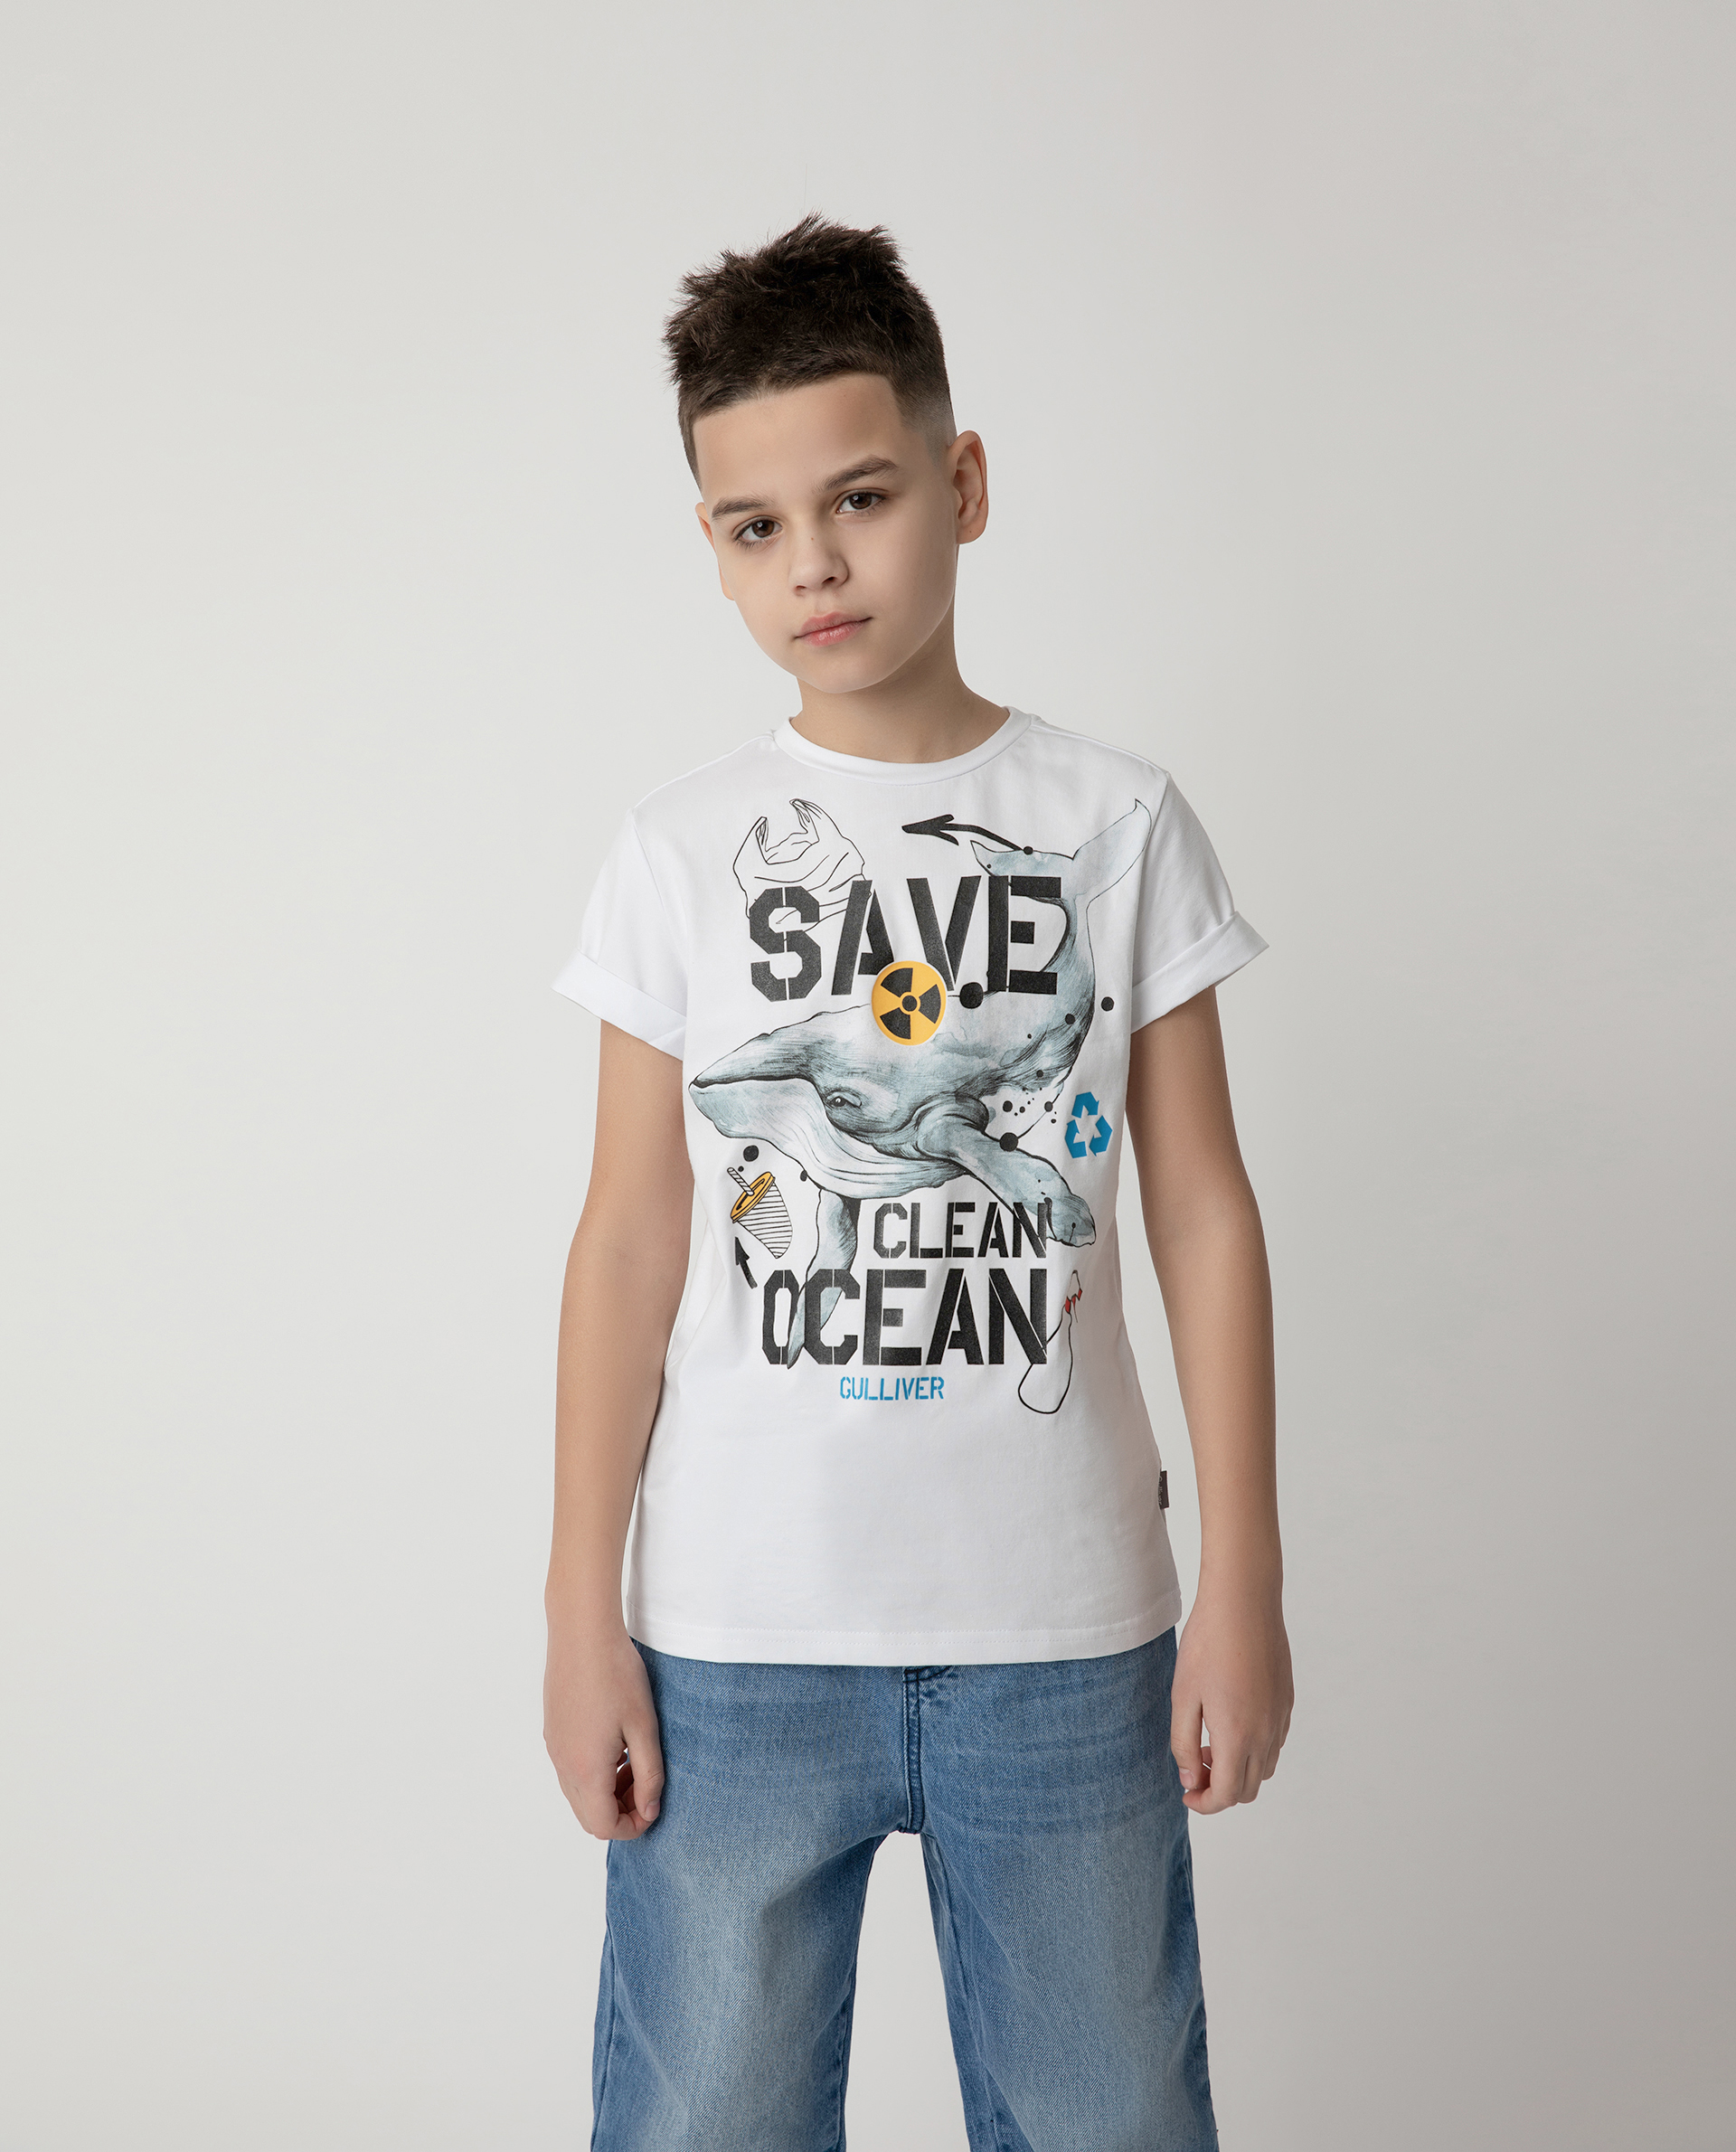 Футболка Save Clean Ocean для мальчика Gulliver 120FBJC1203, размер 146, цвет белый